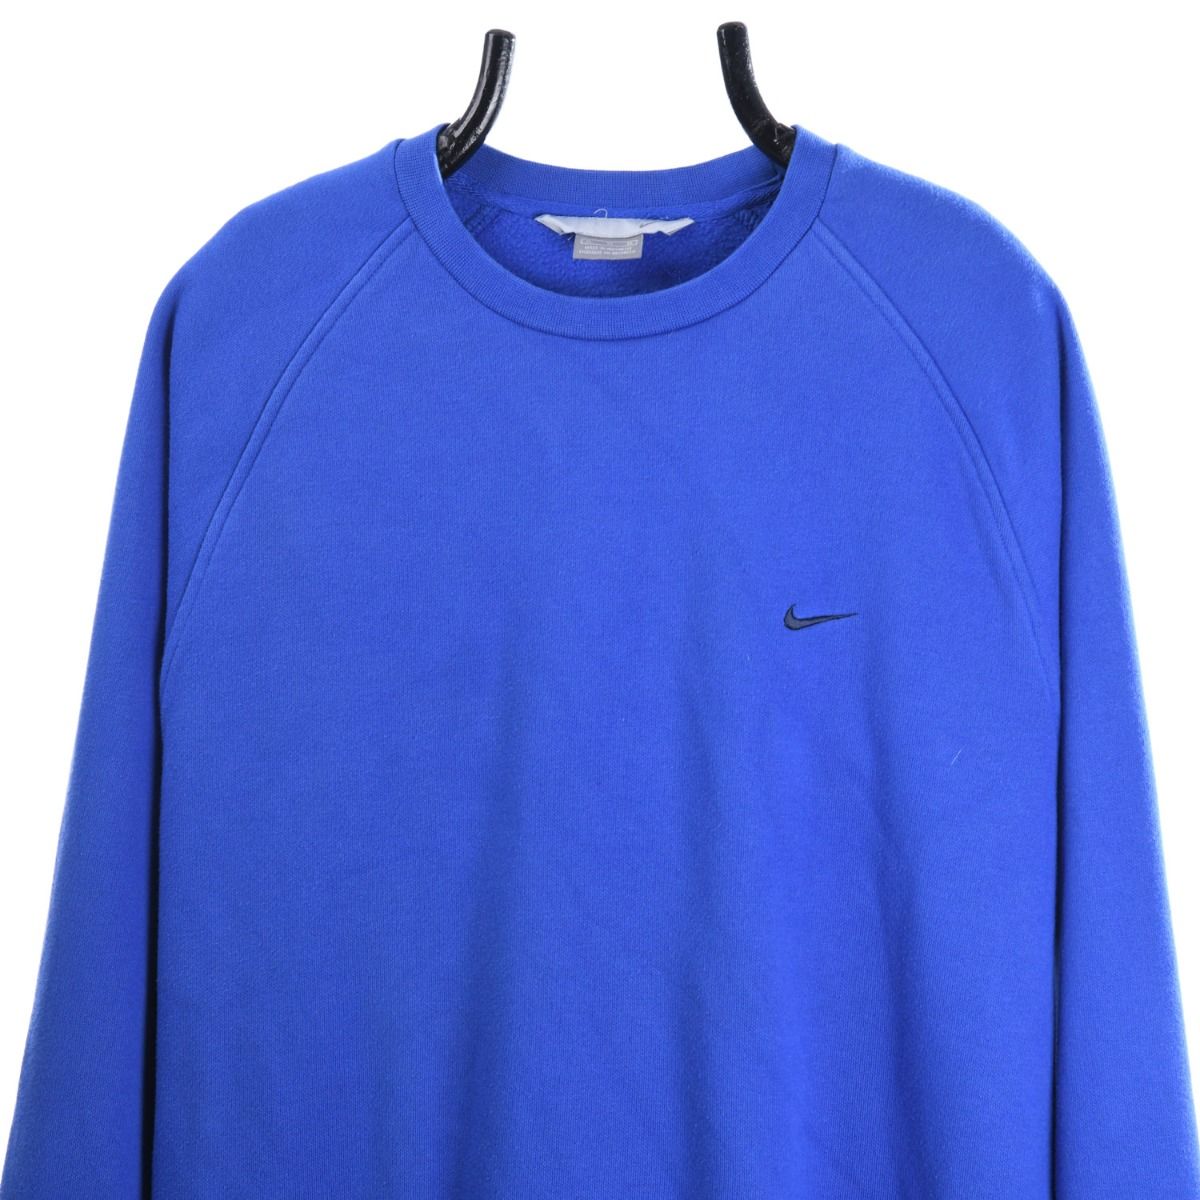 Nike Early 2000s Sweatshirt